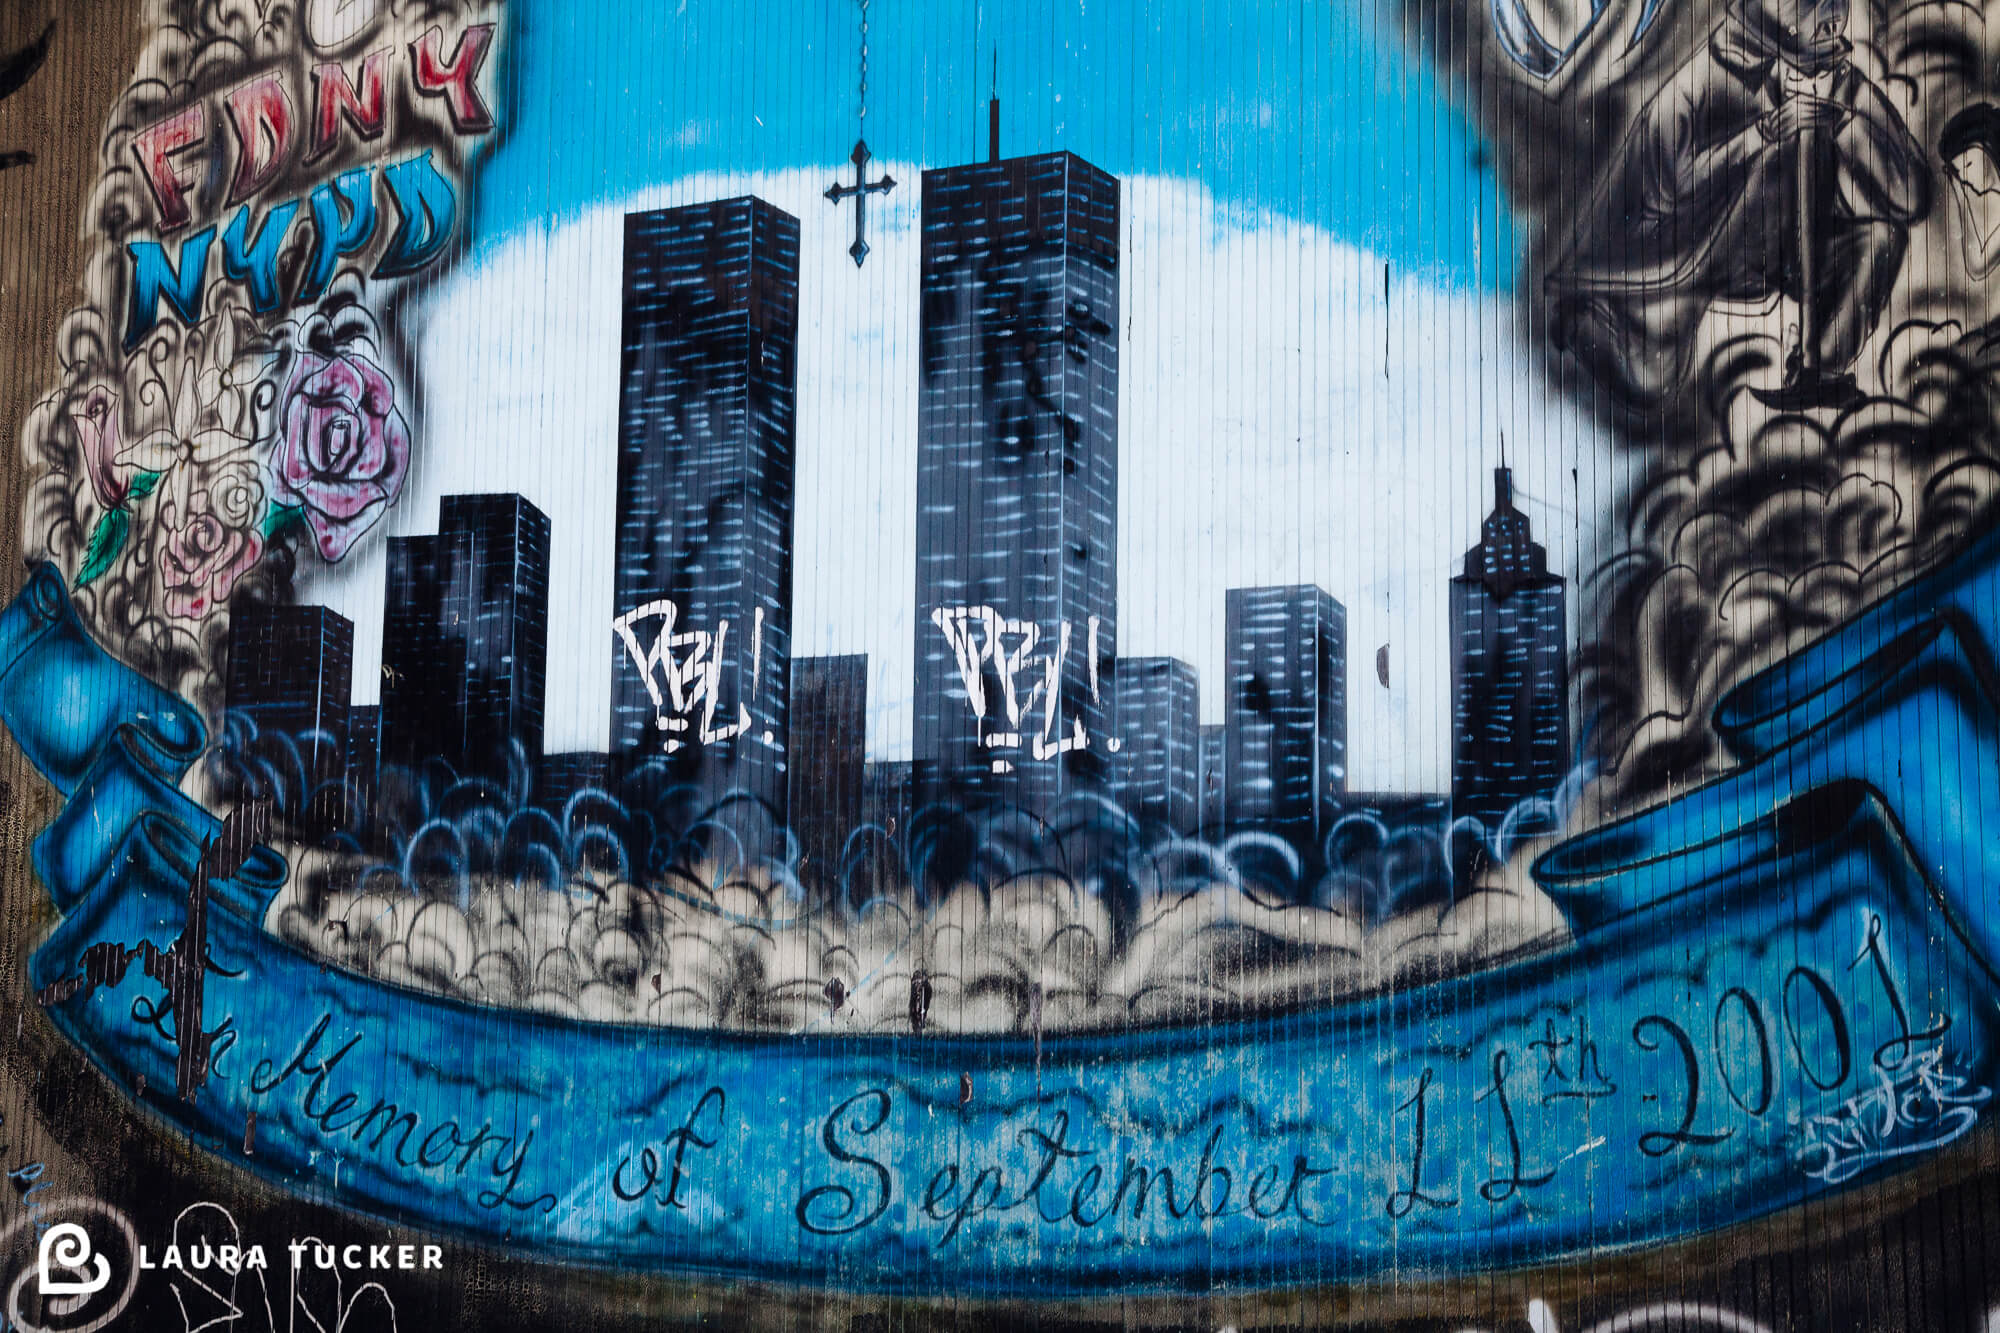 September 11 Memorial Graffitti